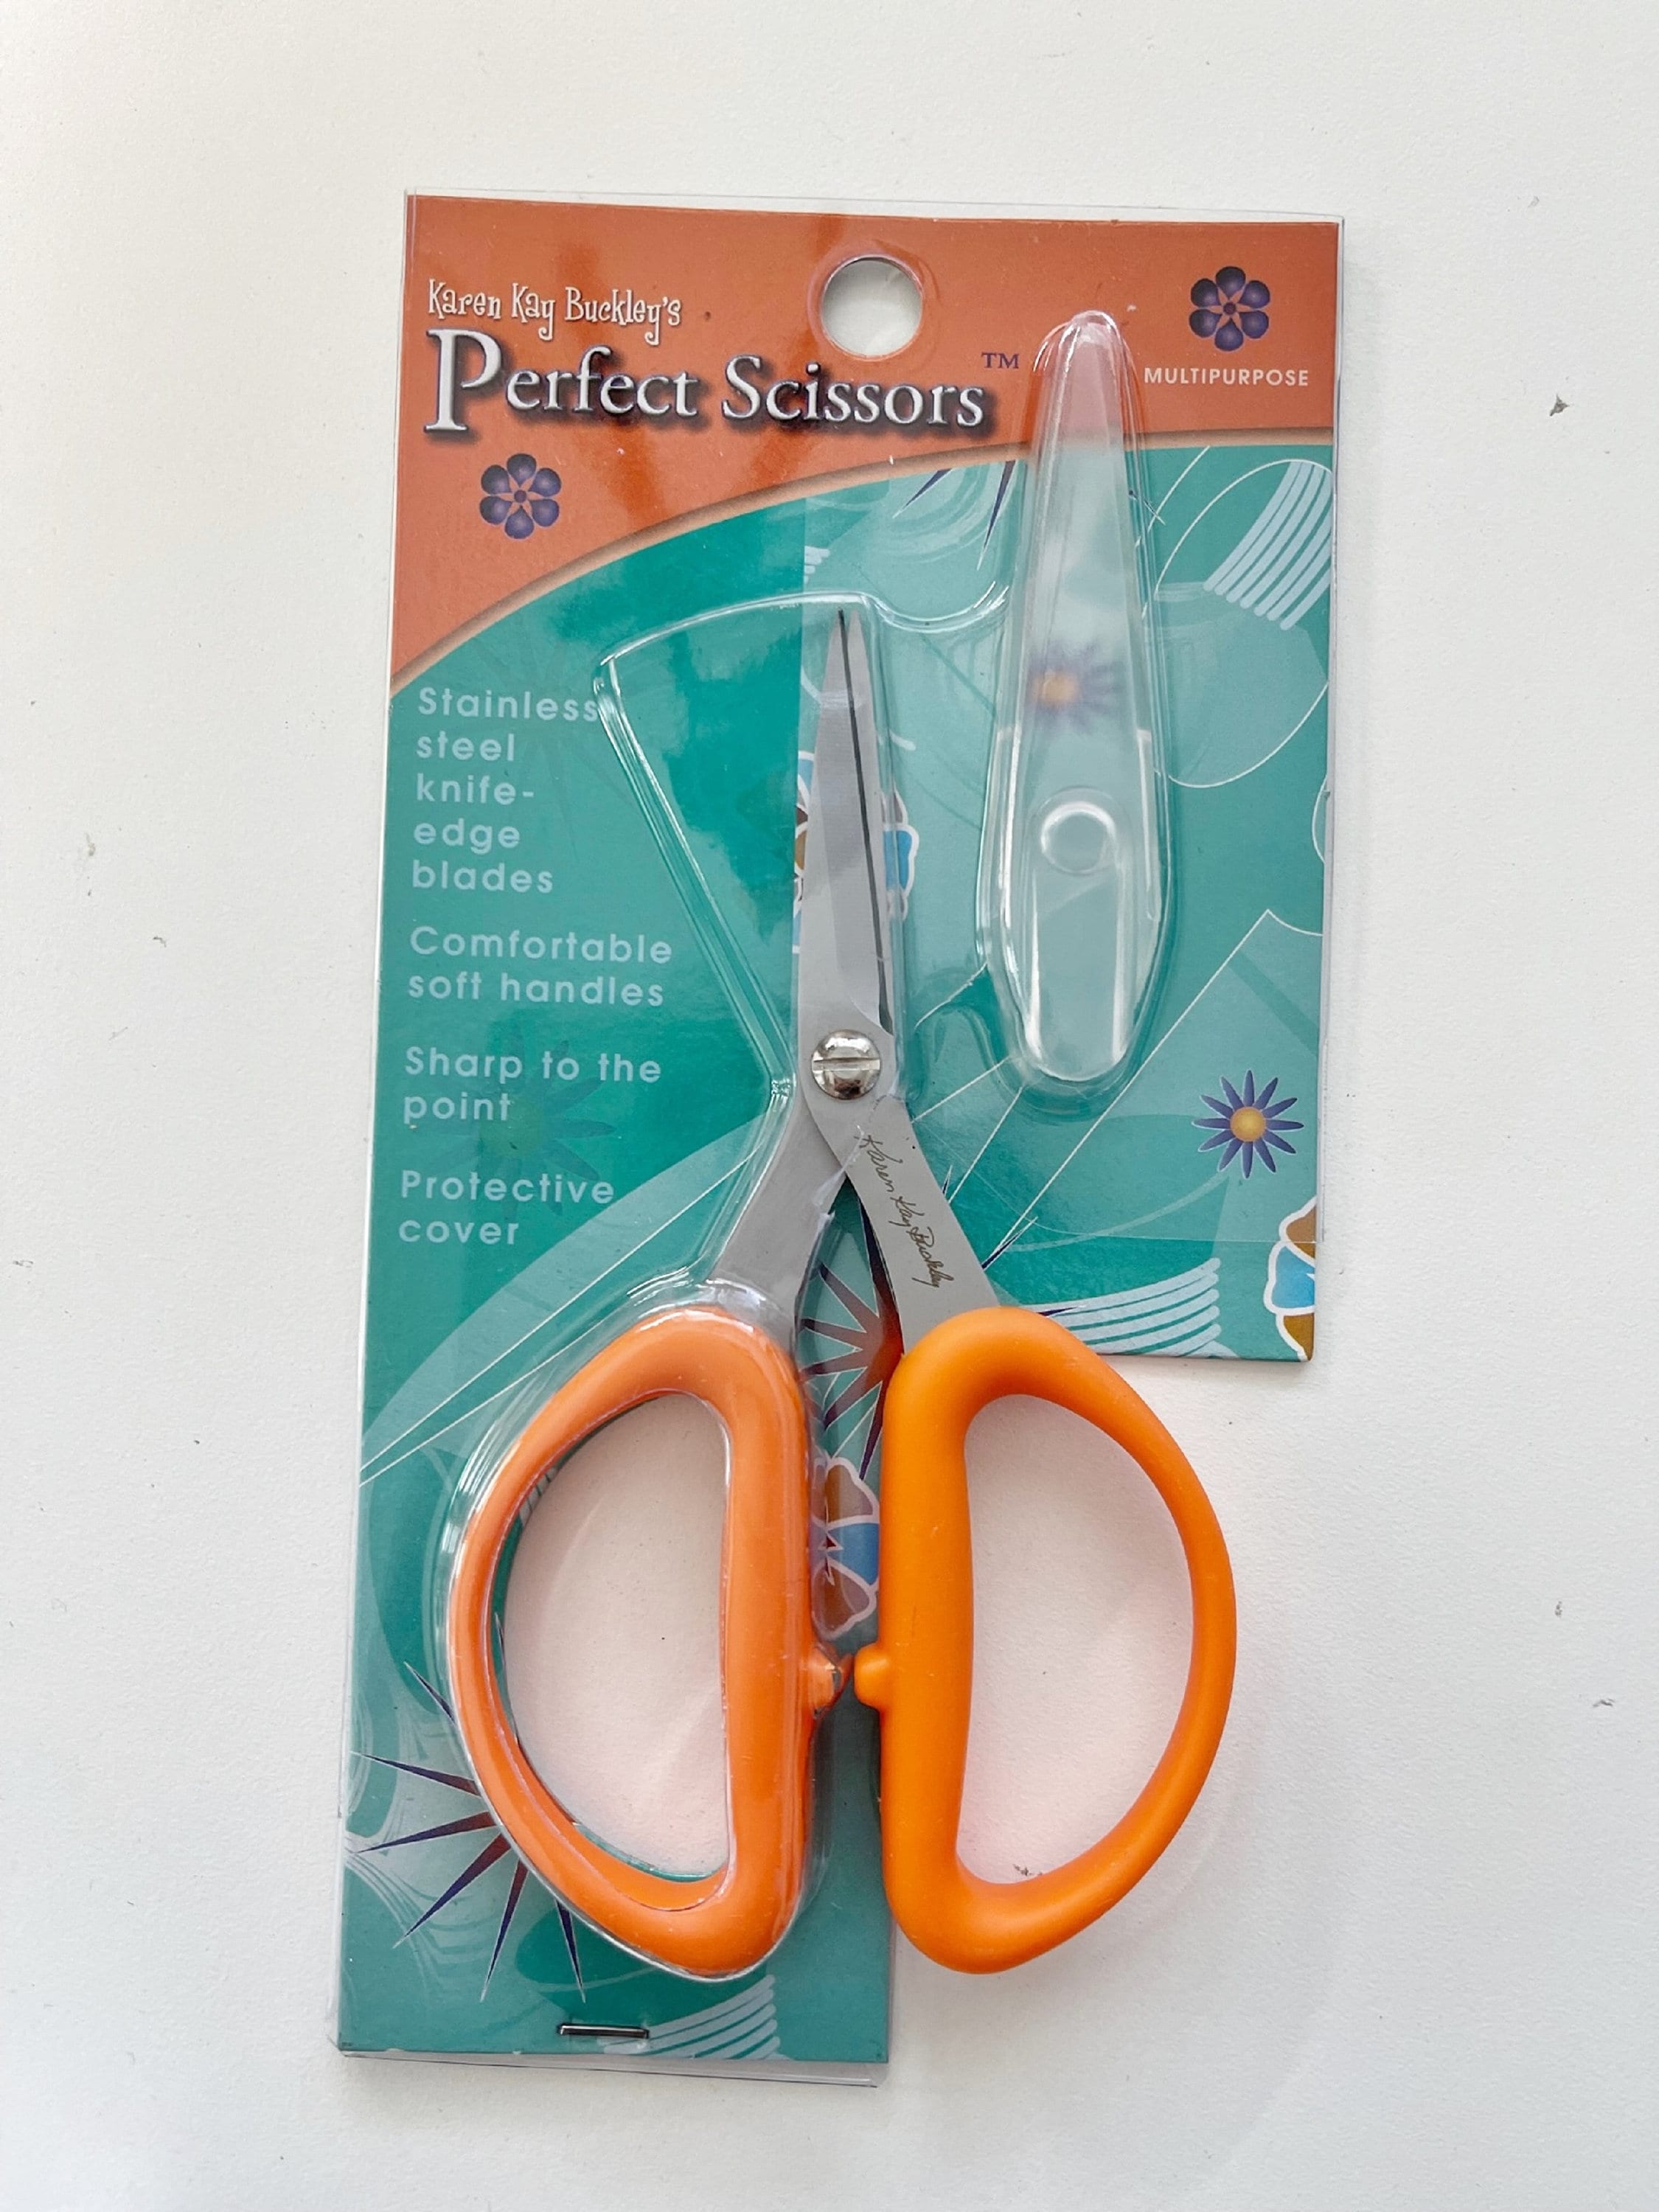 Buy Karen Kay Buckley's Perfect Scissors From Melinda Bula Online in India  